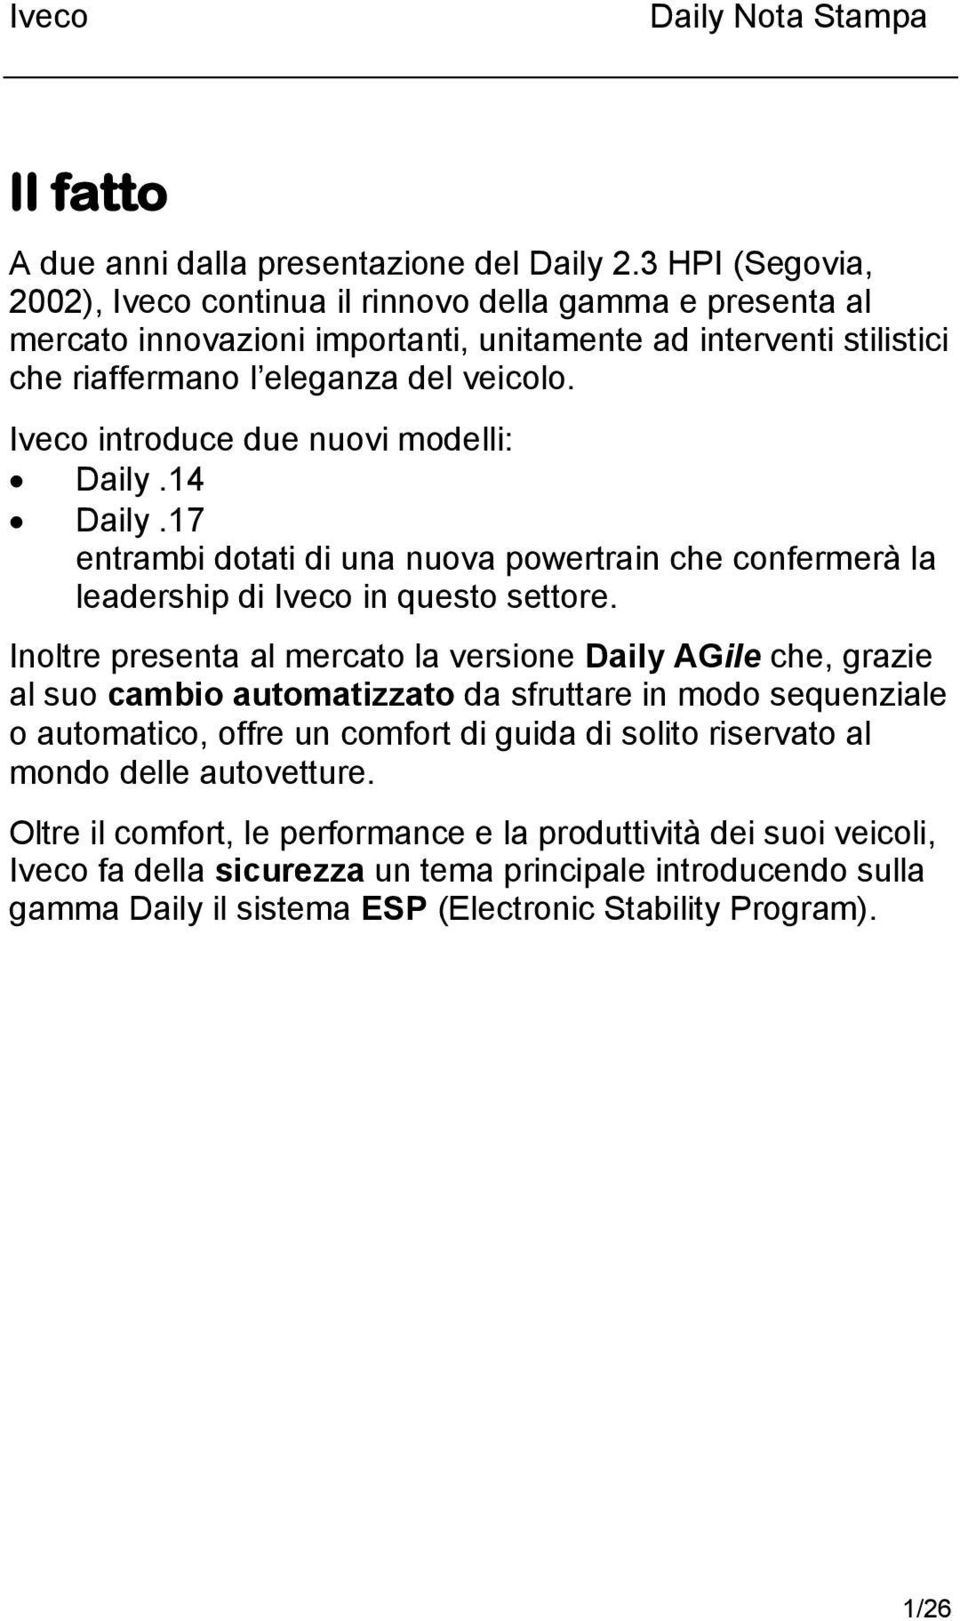 Iveco introduce due nuovi modelli: Daily.14 Daily.17 entrambi dotati di una nuova powertrain che confermerà la leadership di Iveco in questo settore.